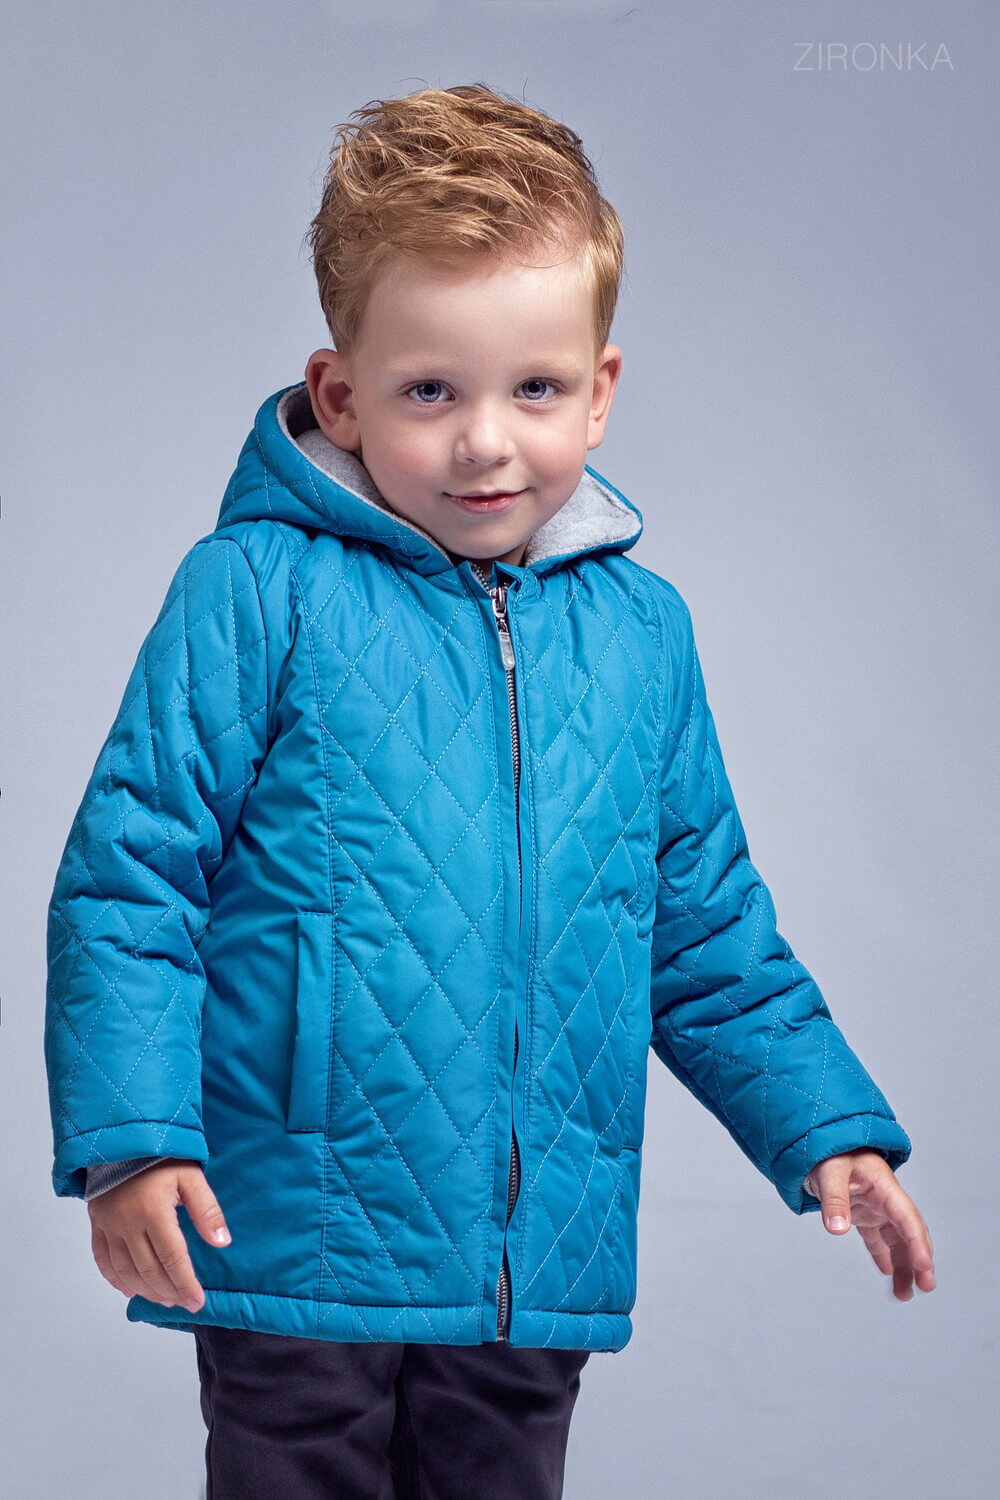 Куртка для мальчика Zironka стеганая синяя 2054-2 - размеры